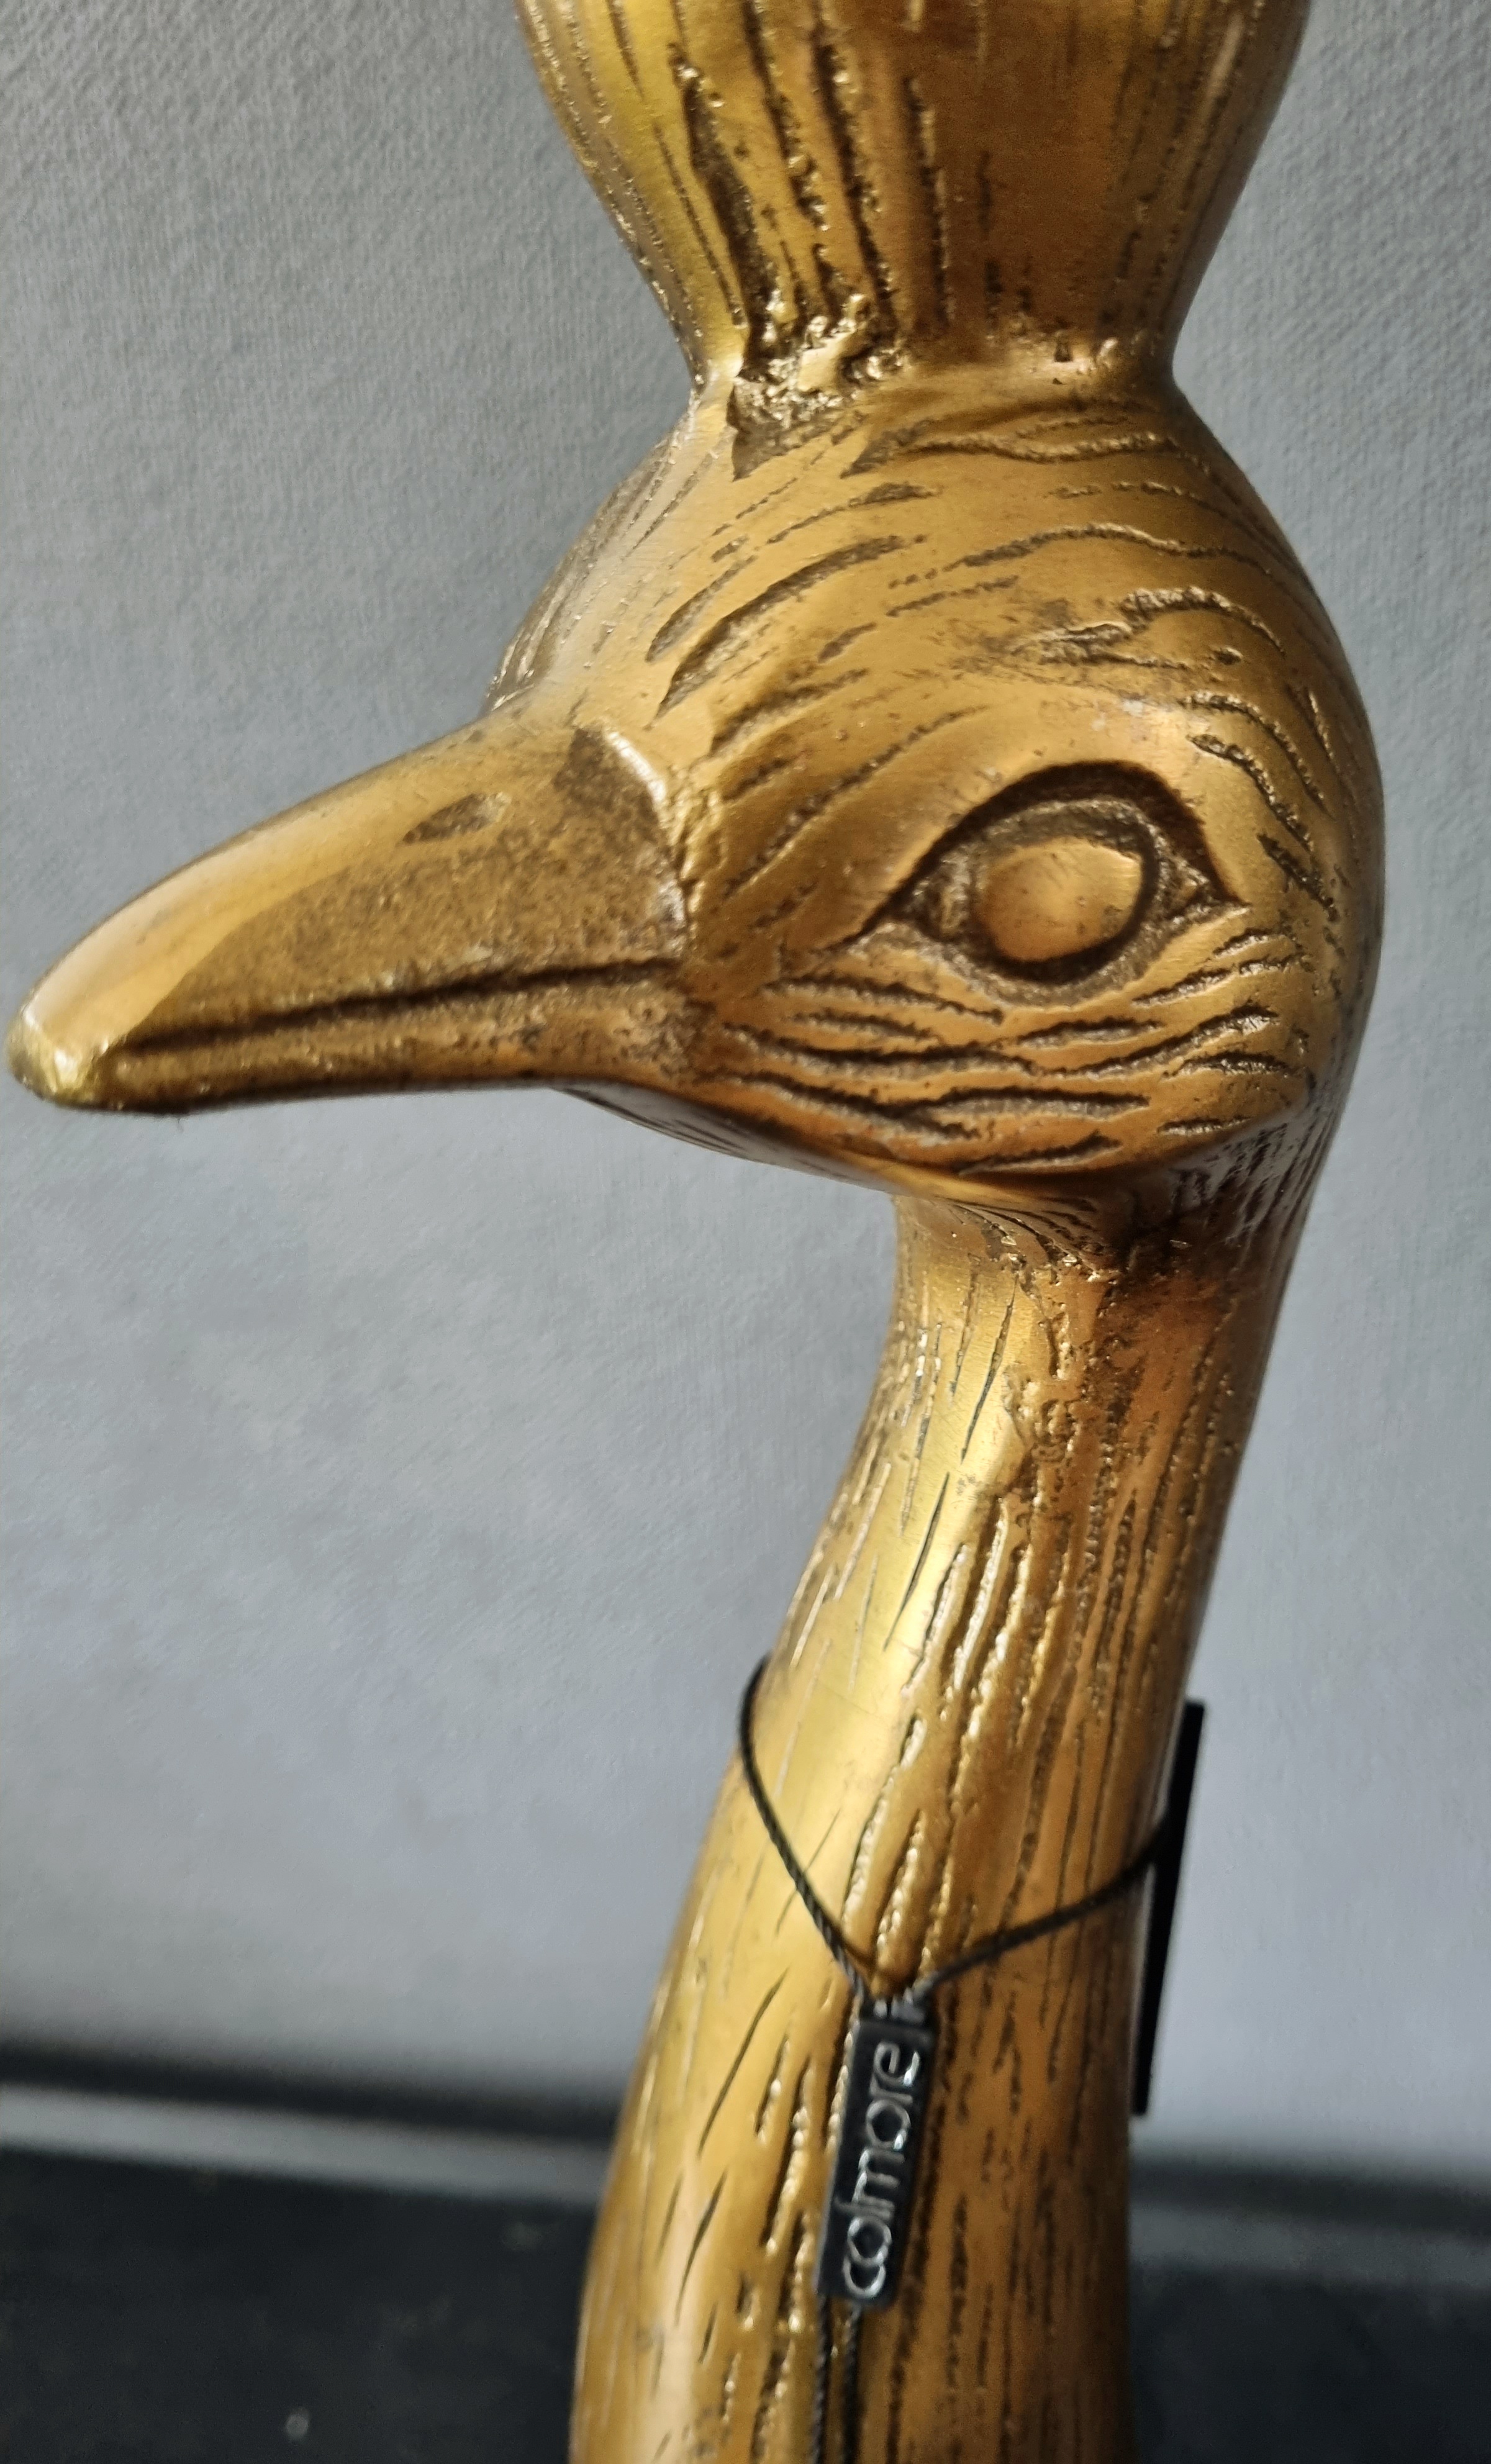 COLMORE, bronskleurige kandelaar in raw-metal, BIRD. Afgeprijsd van €34,95 voor €25!